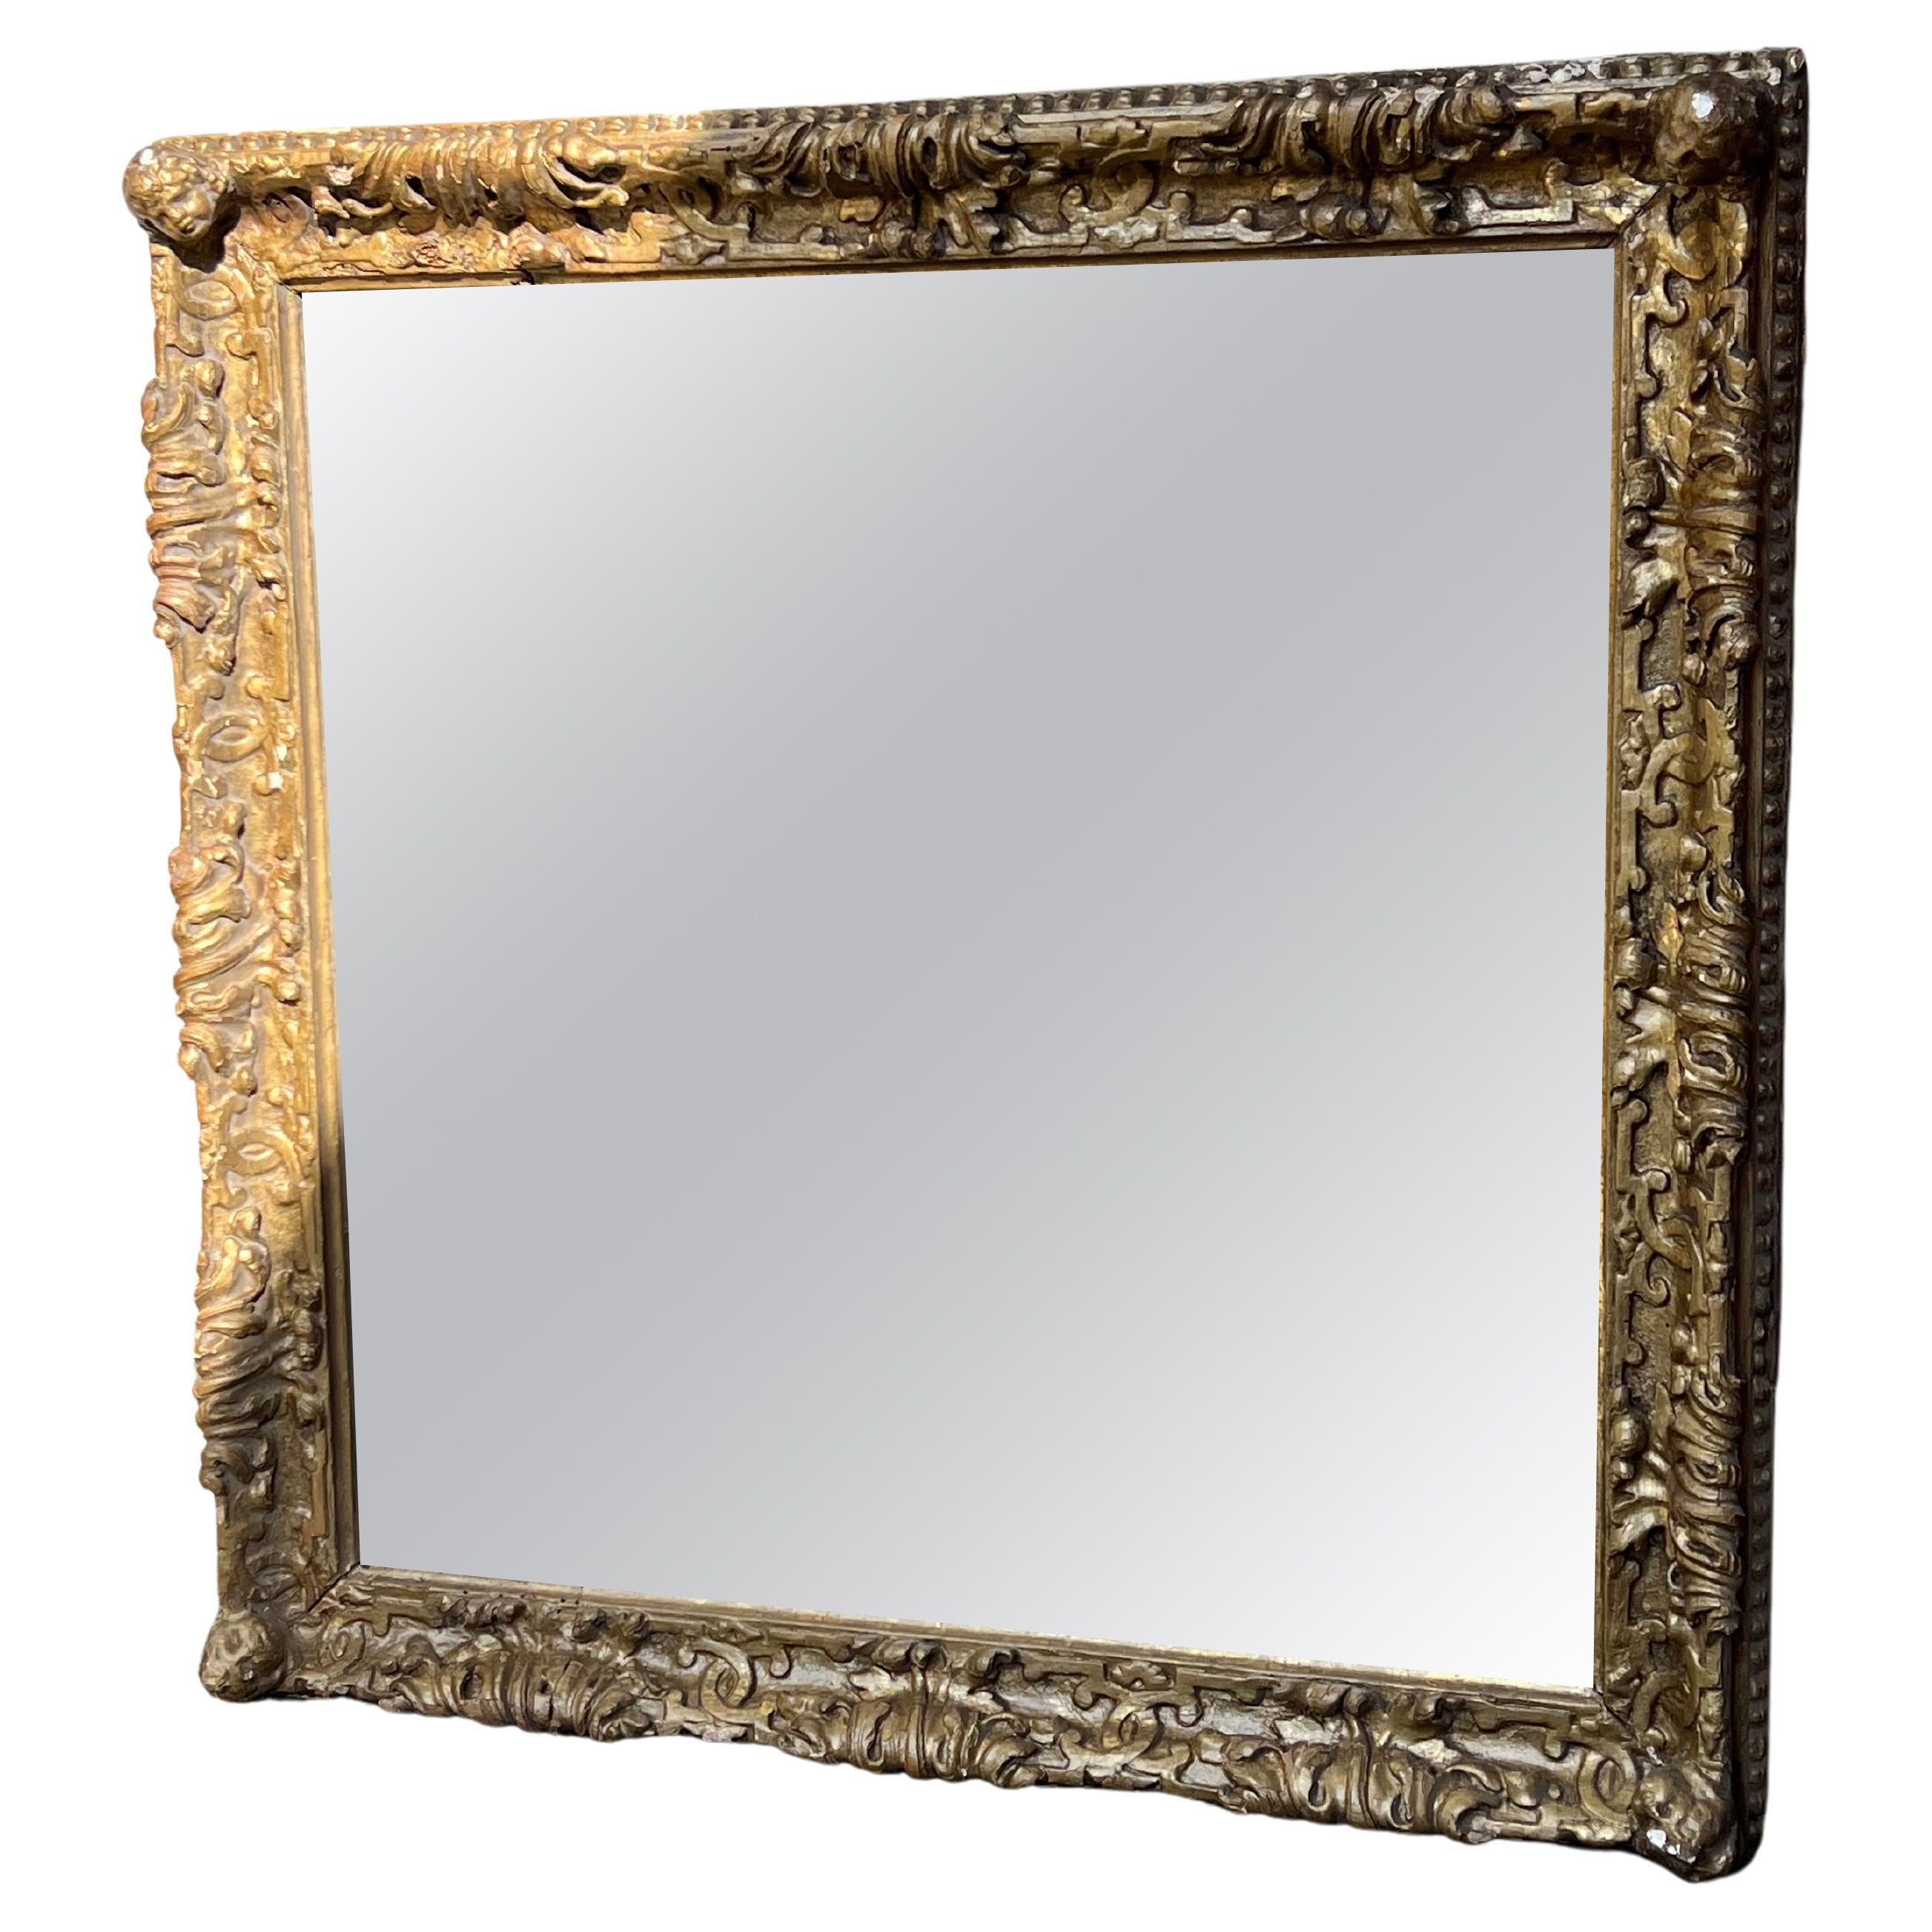 antica specchiera quadrata en oro Zecchino - miroir - specchiera 